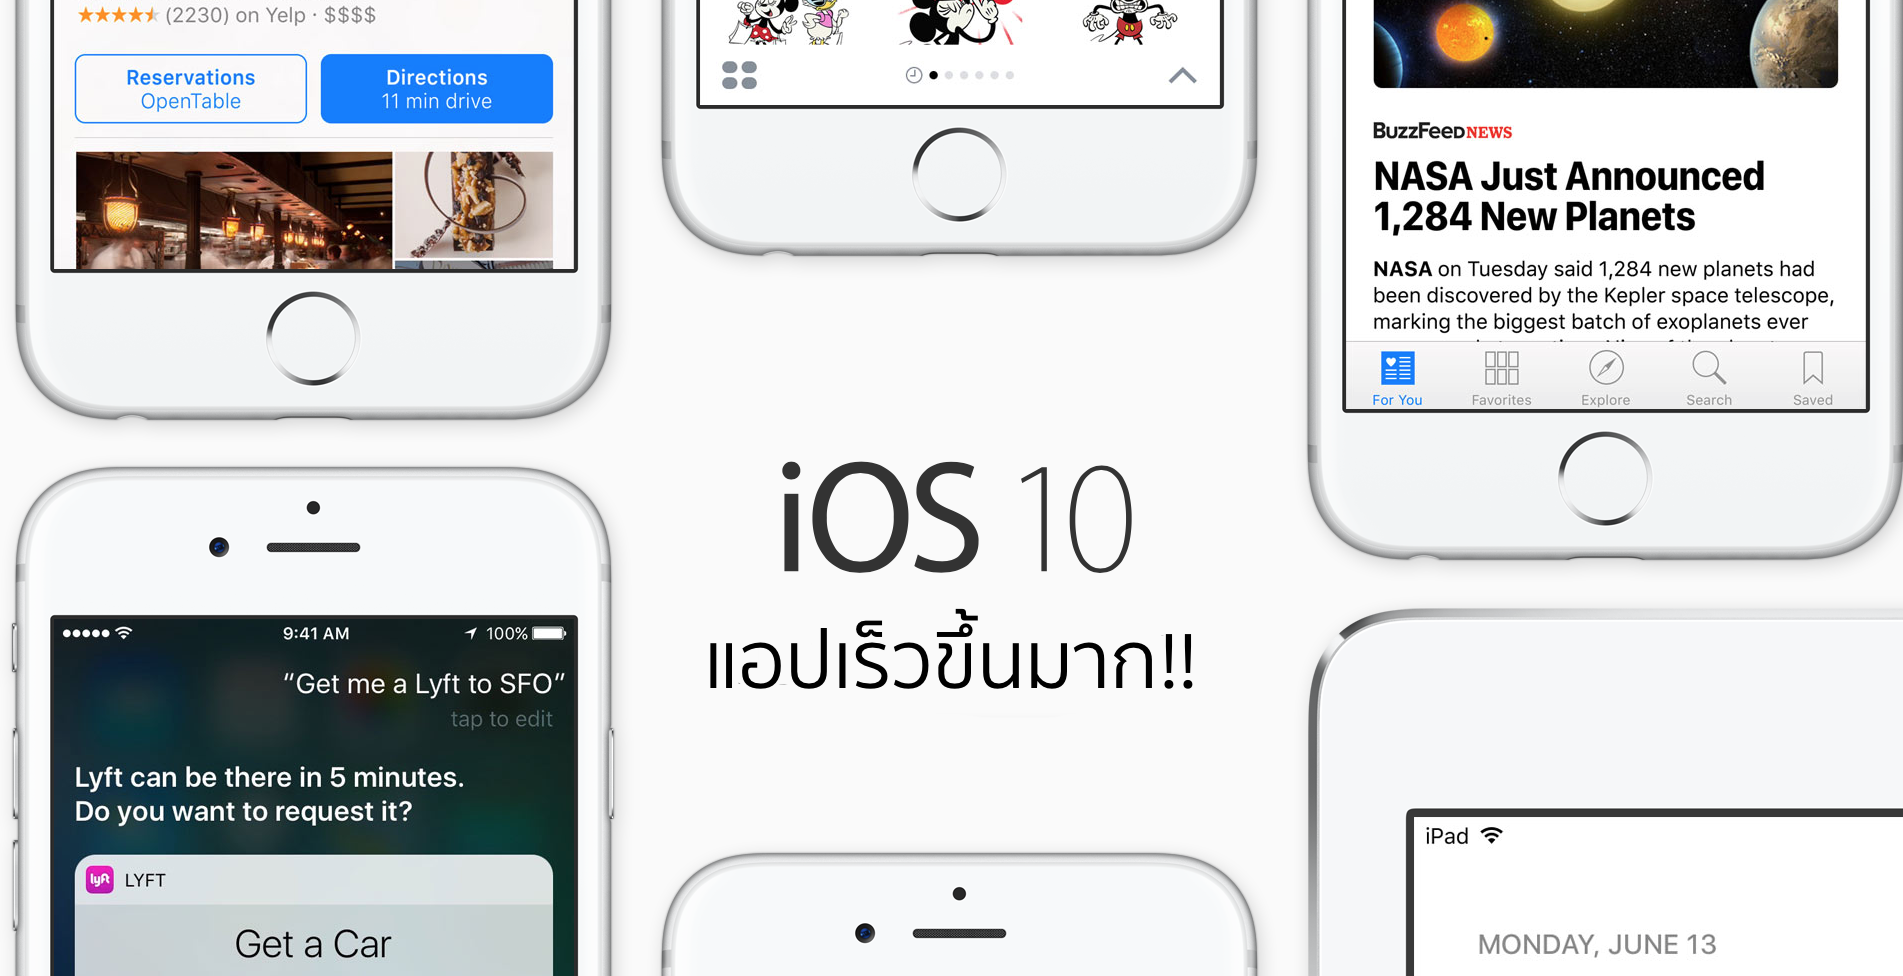 Apple เผย iOS 10 มีตัวช่วยที่ทำให้รันทุกแอปได้เร็วขึ้น!